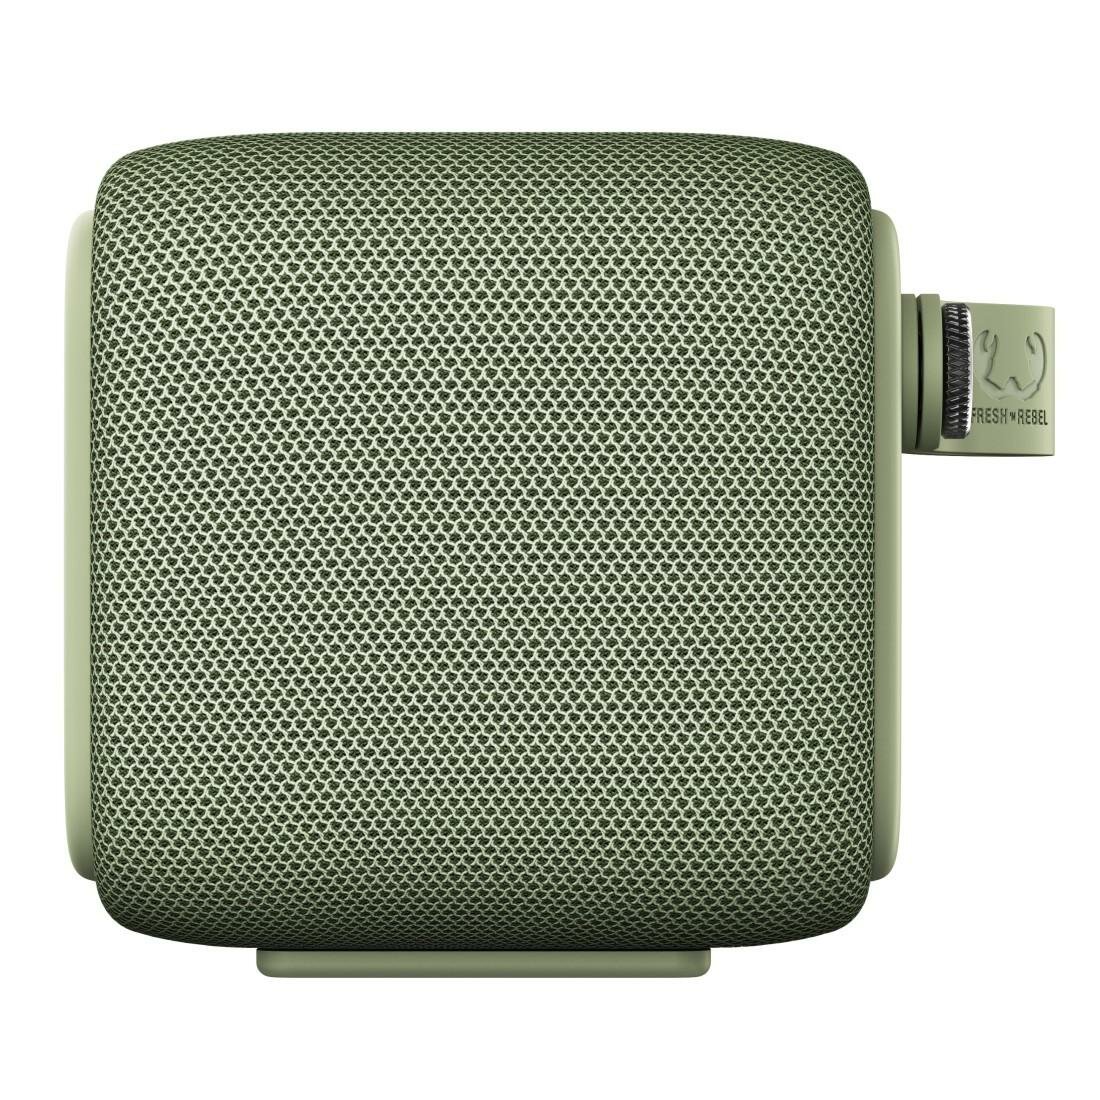 Głośnik mobilny FRESH N REBEL Rockbox Bold S Dried Green Zielony - niskie  ceny i opinie w Media Expert